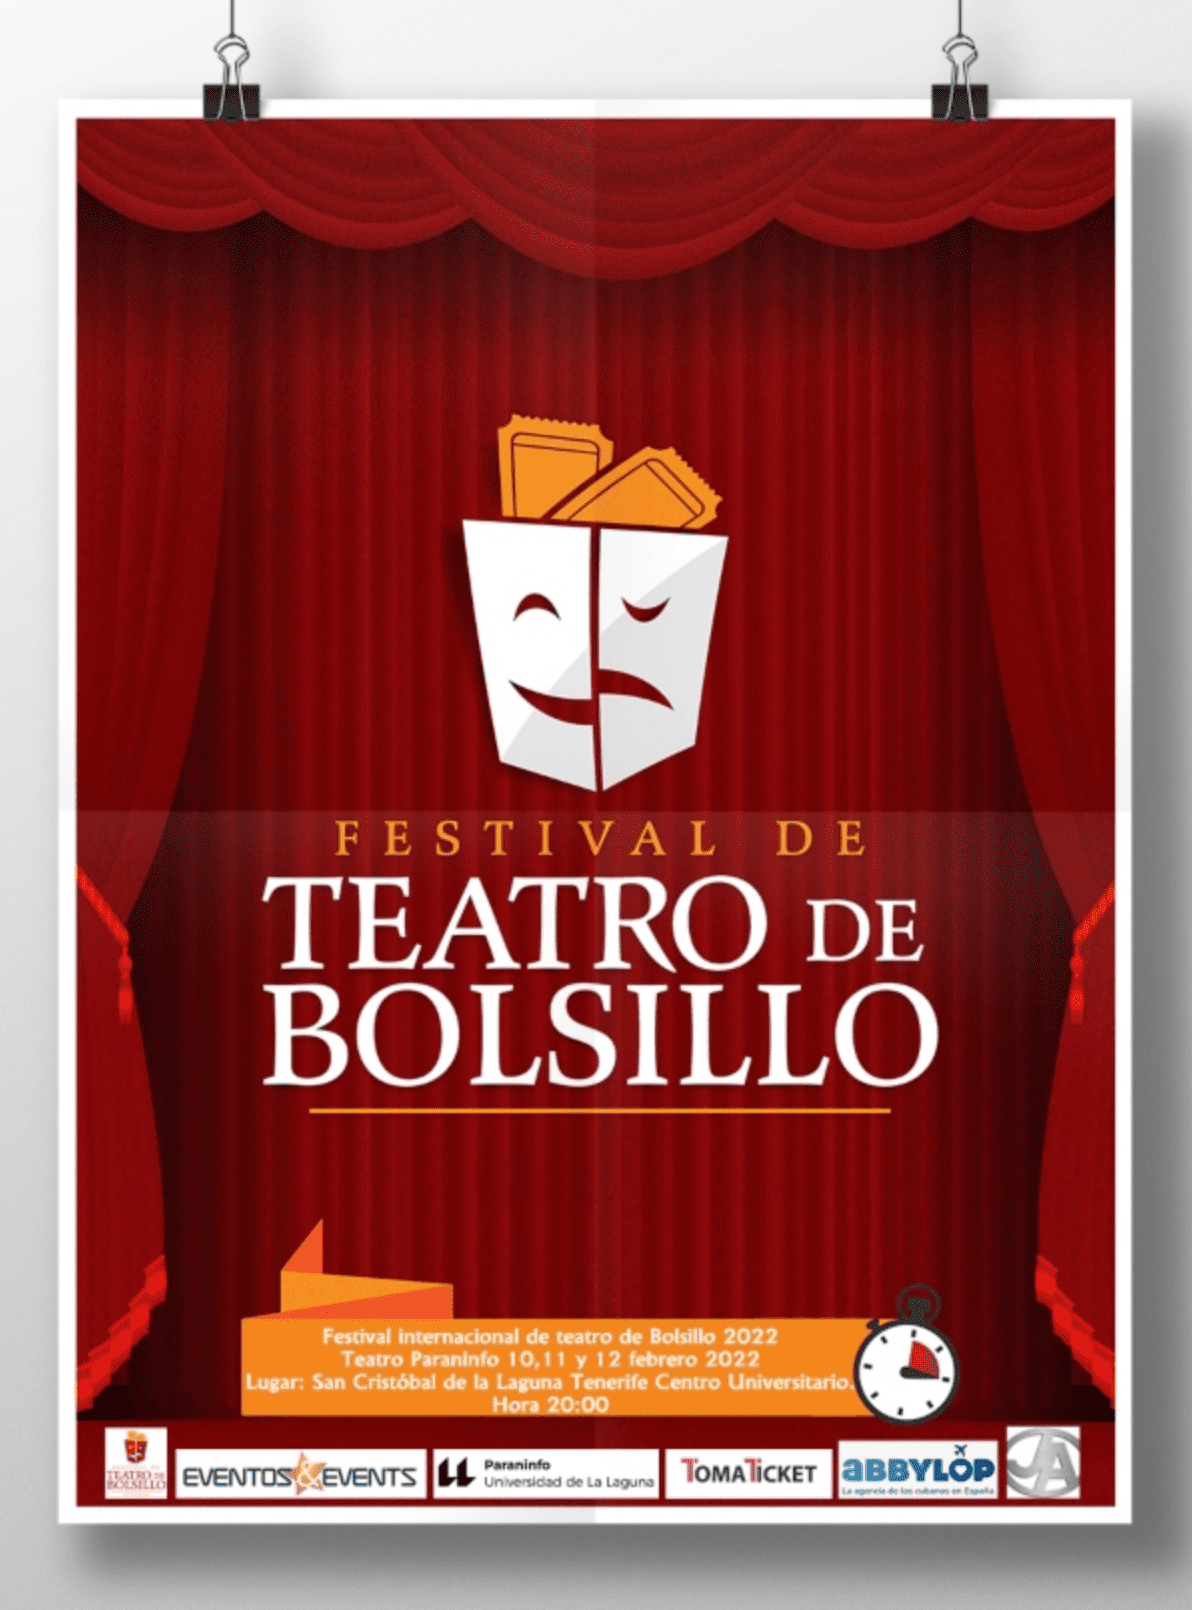 Otros cultura y arte - Teatro -  Festival de Teatro de Bolsillo en Tenerife - SAN CRISTOBAL DE LA LAGUNA